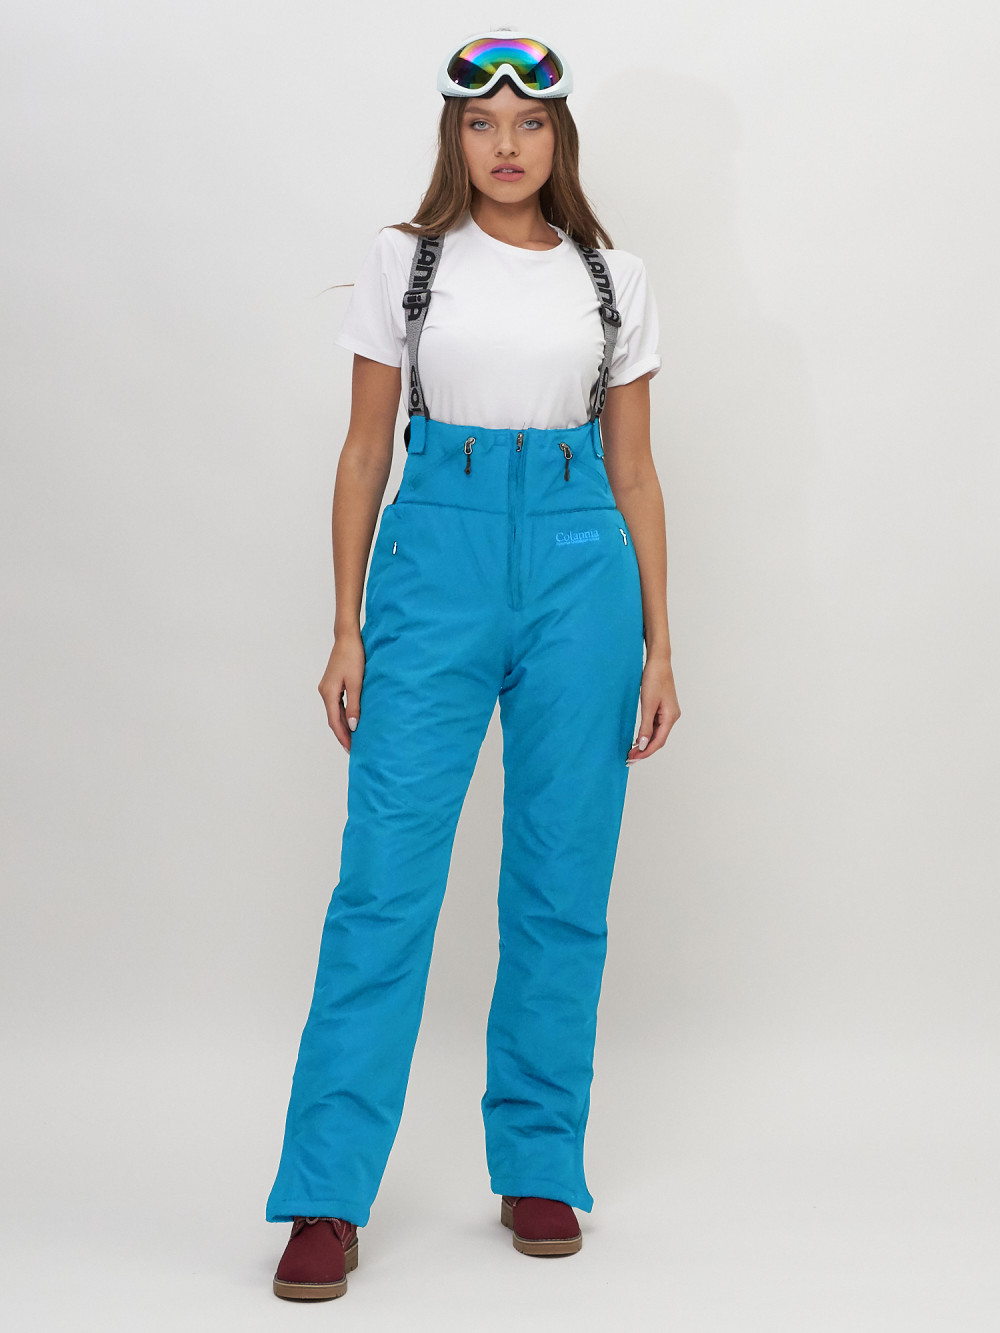 Купить Полукомбинезон брюки горнолыжные женские голубого цвета 66789Gl